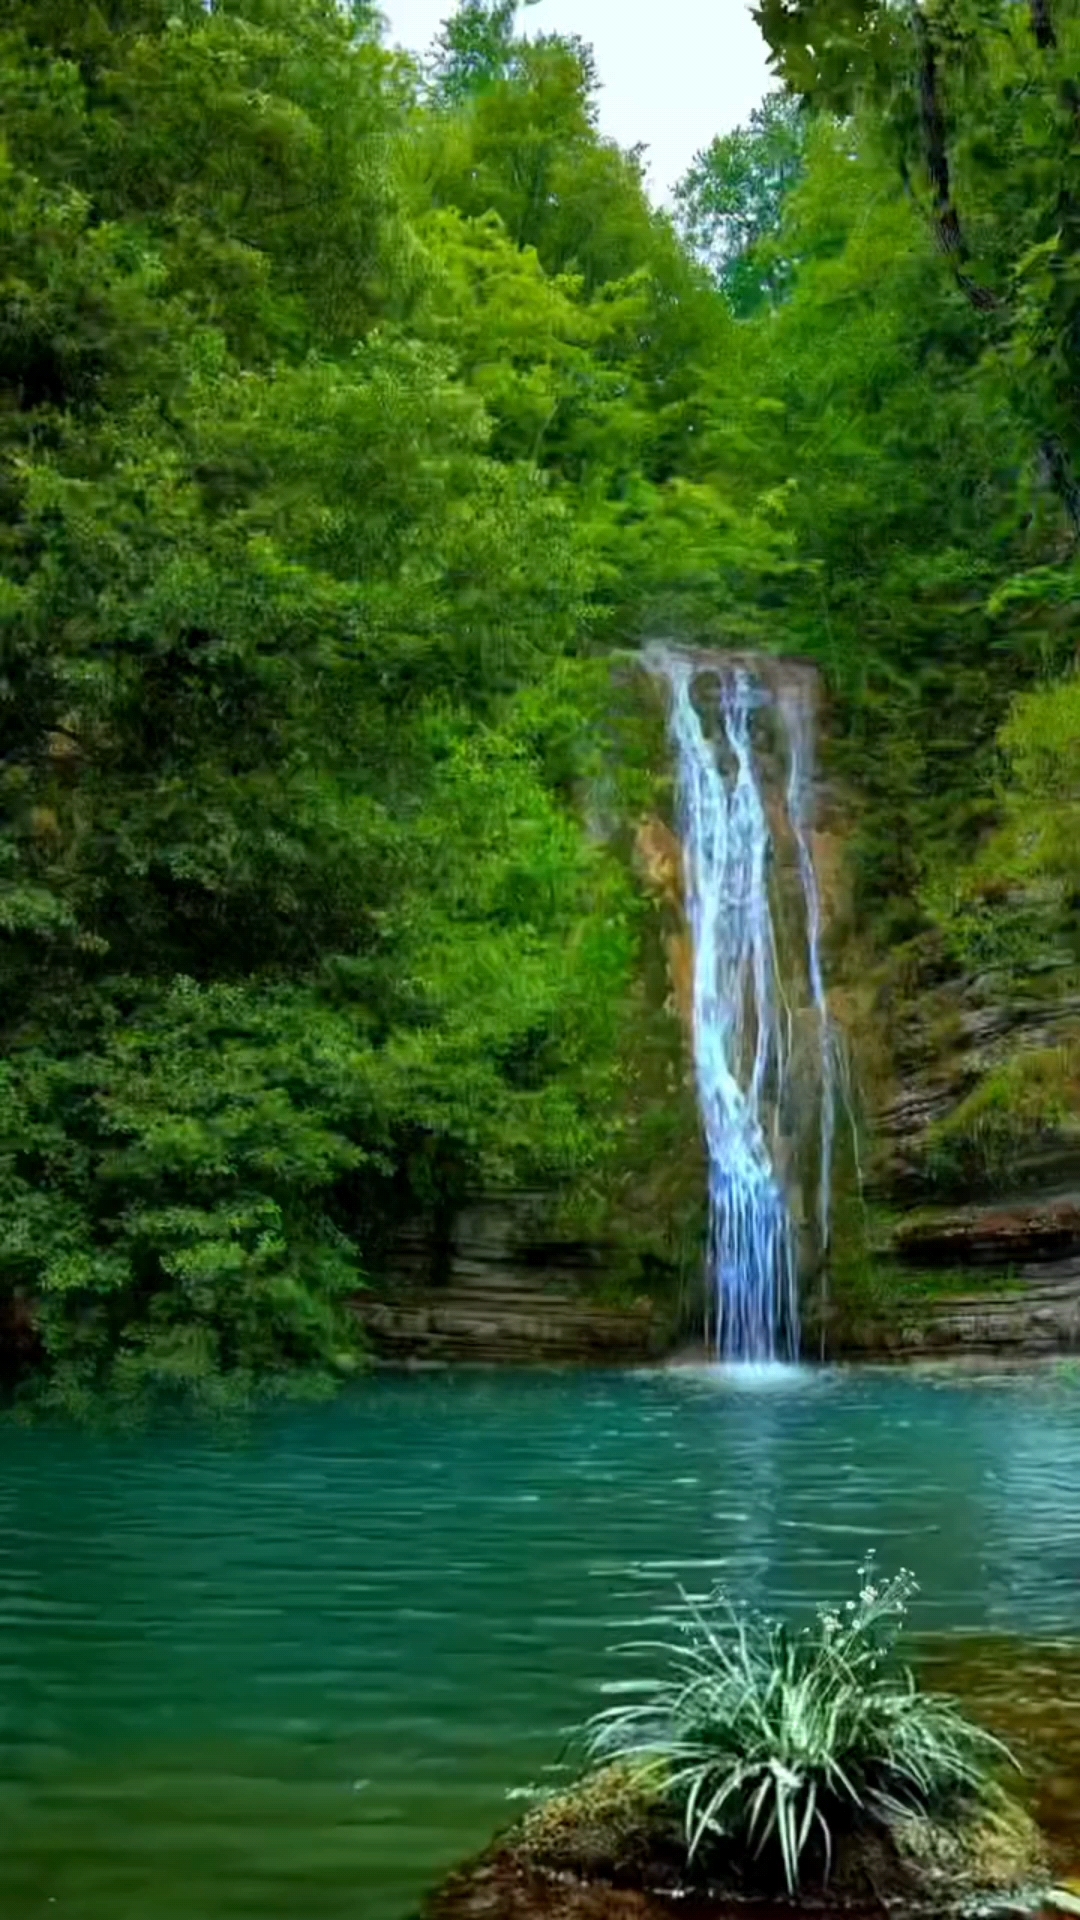 青山绿水,林间小溪清,潺潺的流水,大自然的美,让人心旷神怡